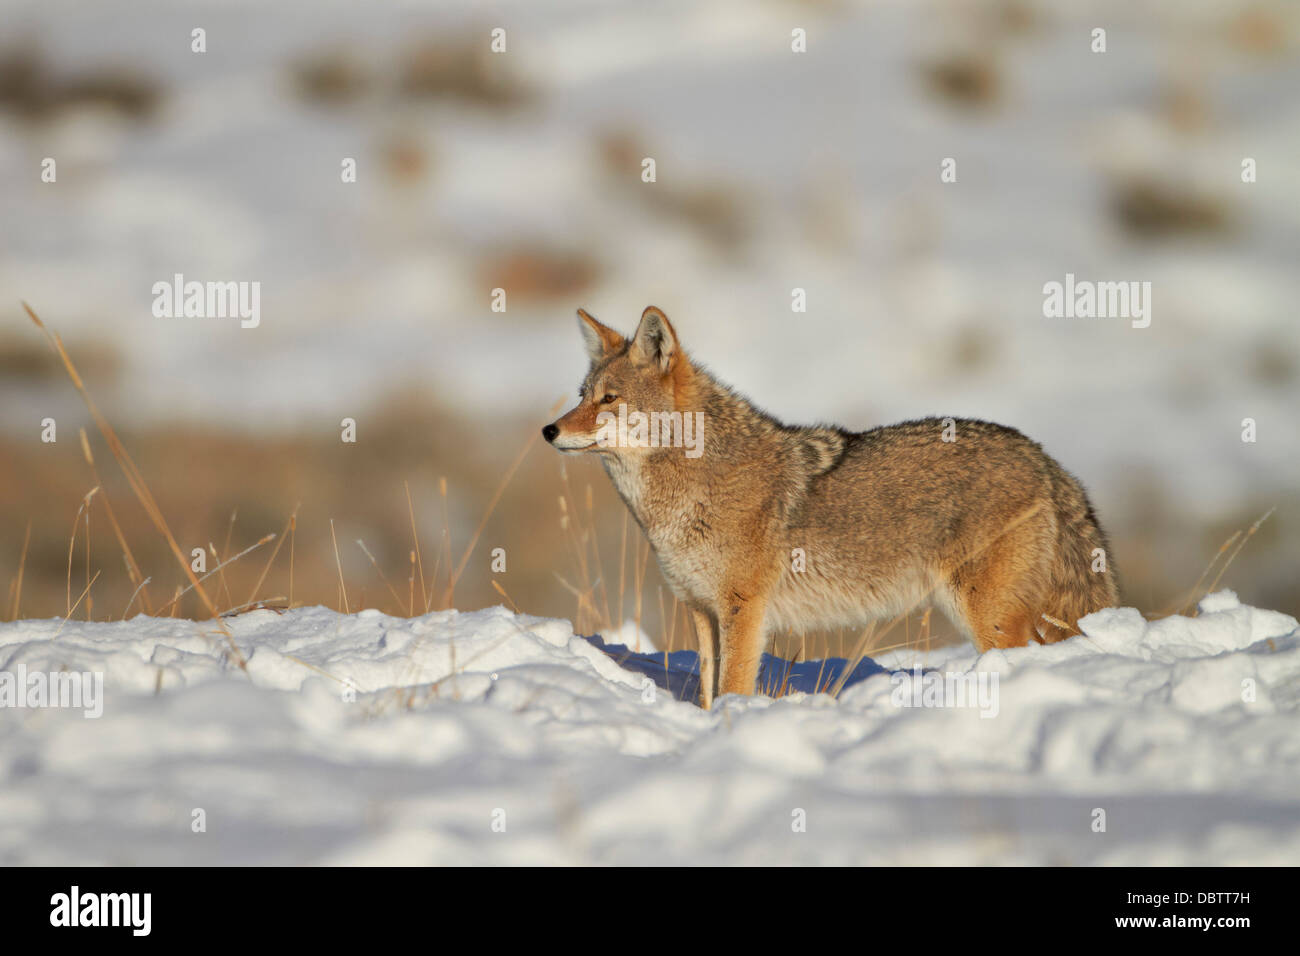 Le Coyote (Canis latrans) dans la neige, Parc National de Yellowstone, Wyoming, États-Unis d'Amérique, Amérique du Nord Banque D'Images